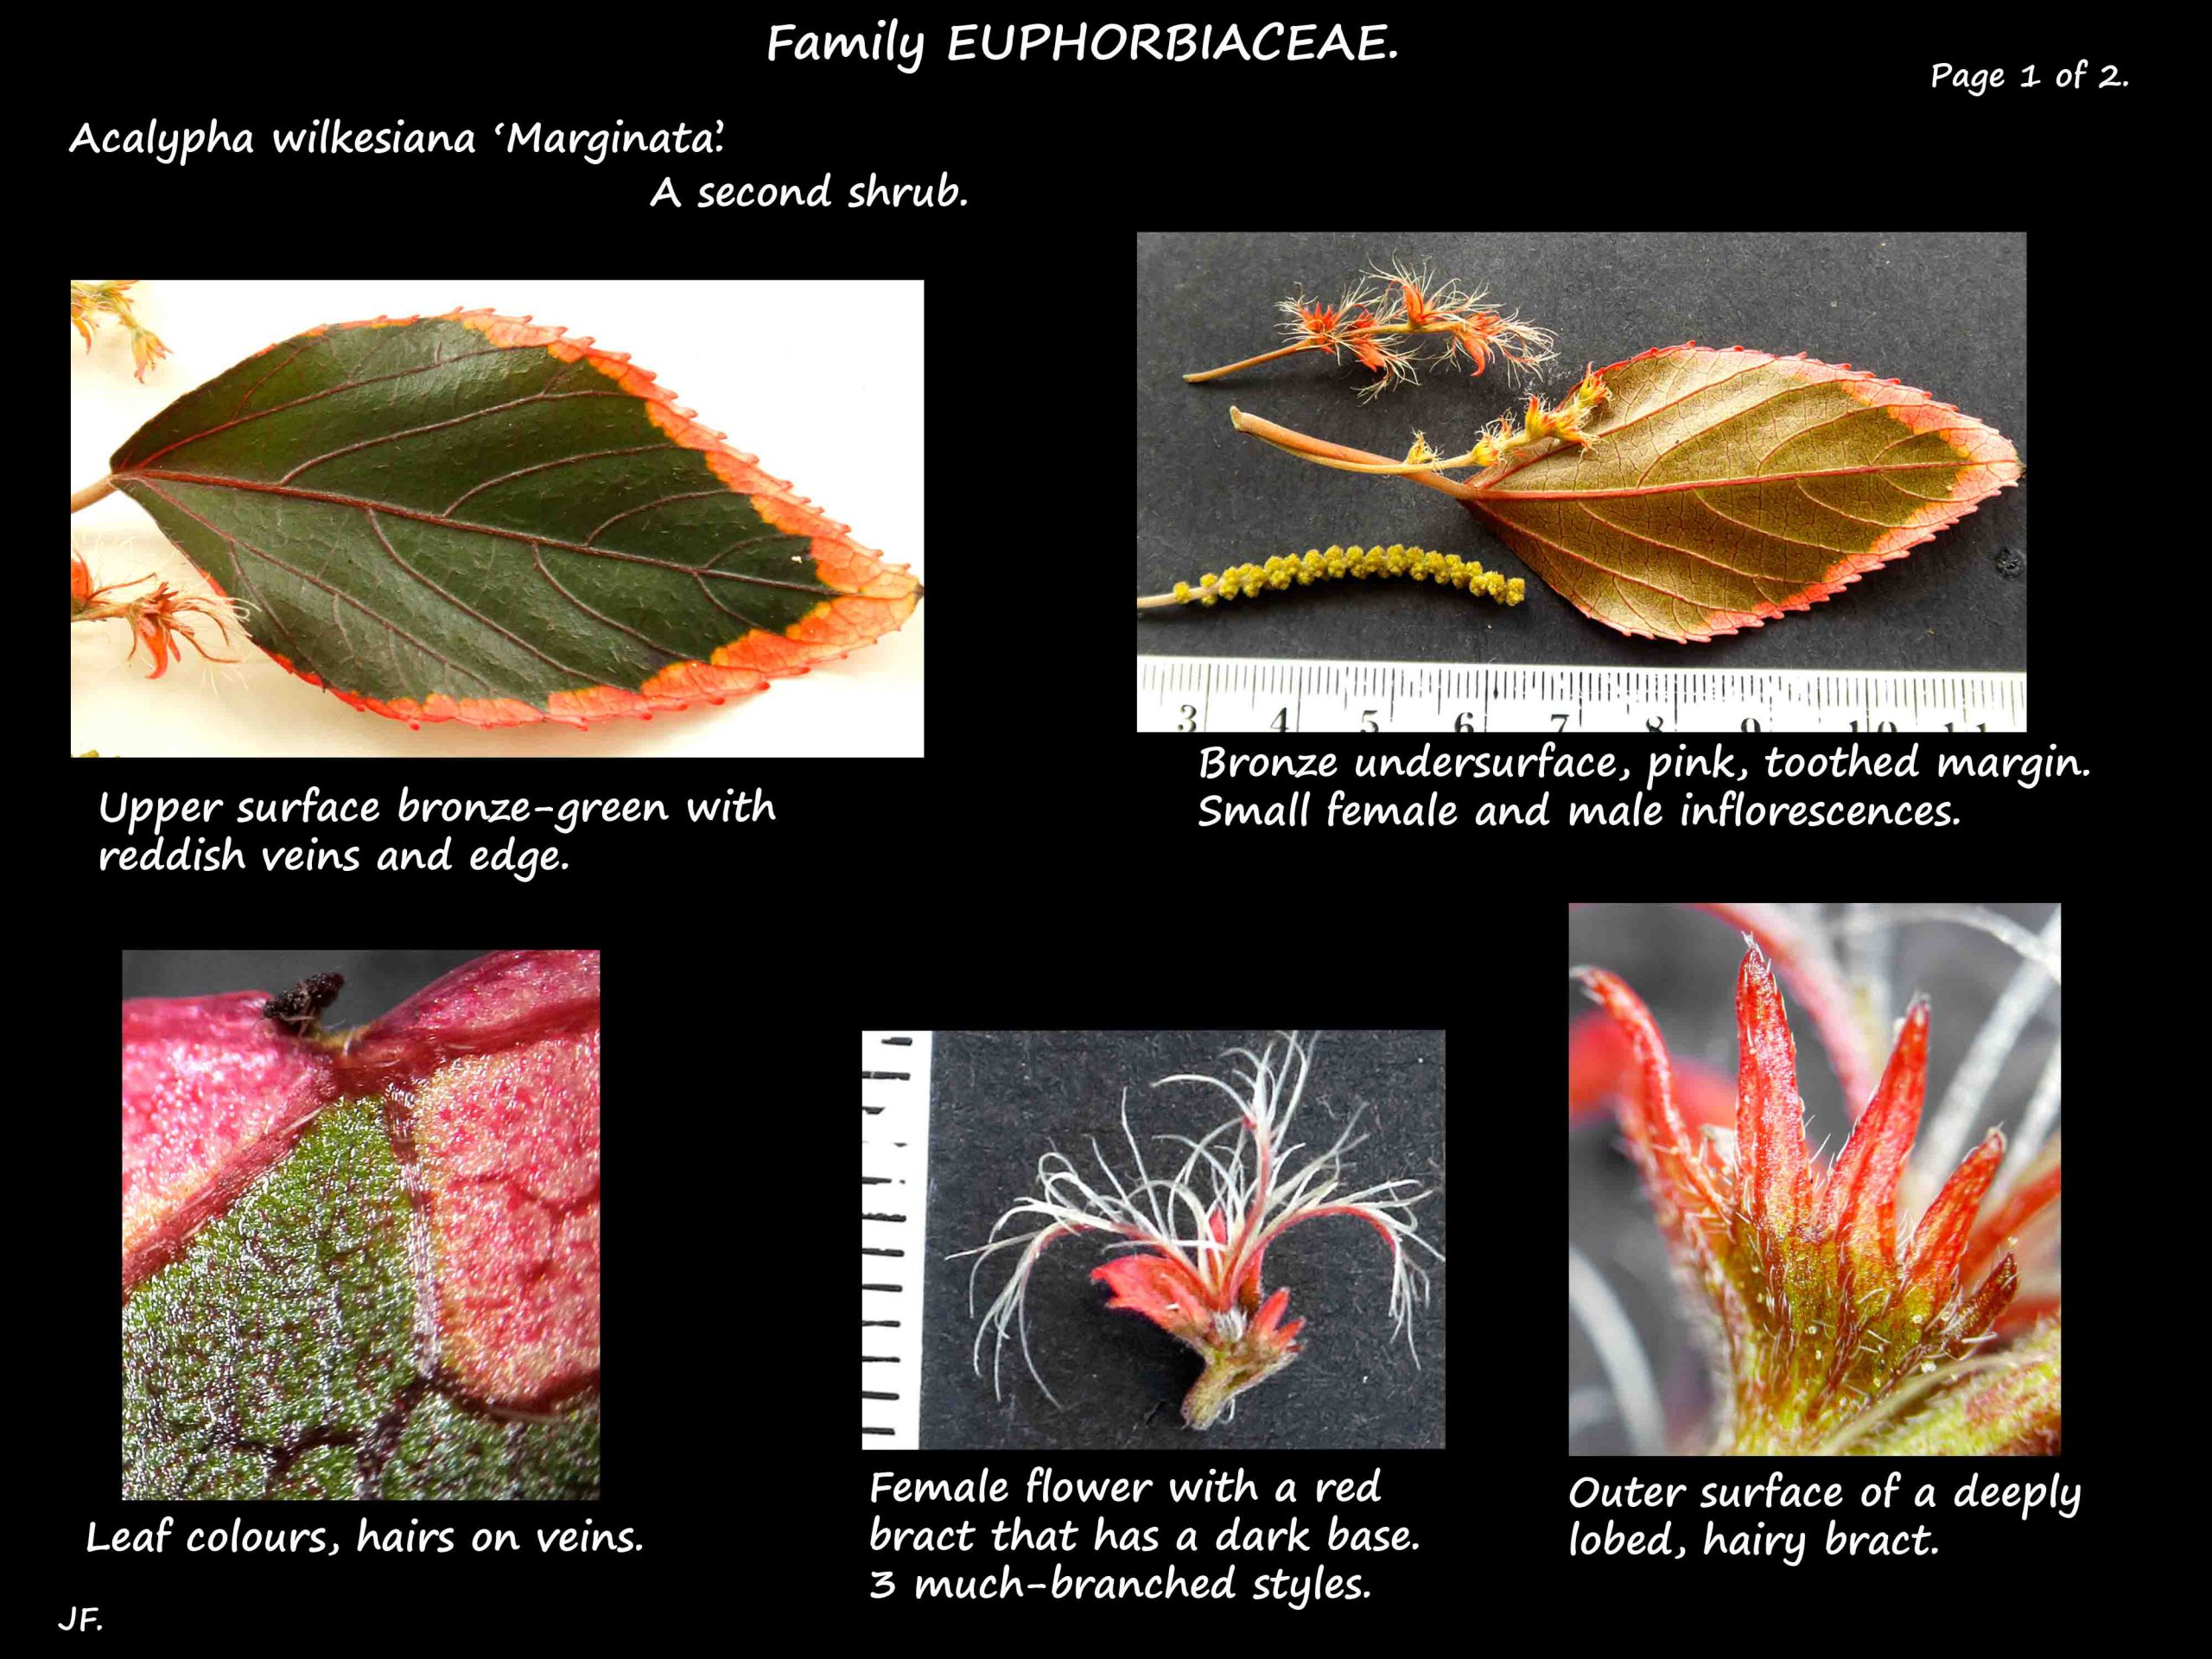 2 Leaves & female flowers of Acalypha 'Marginata'